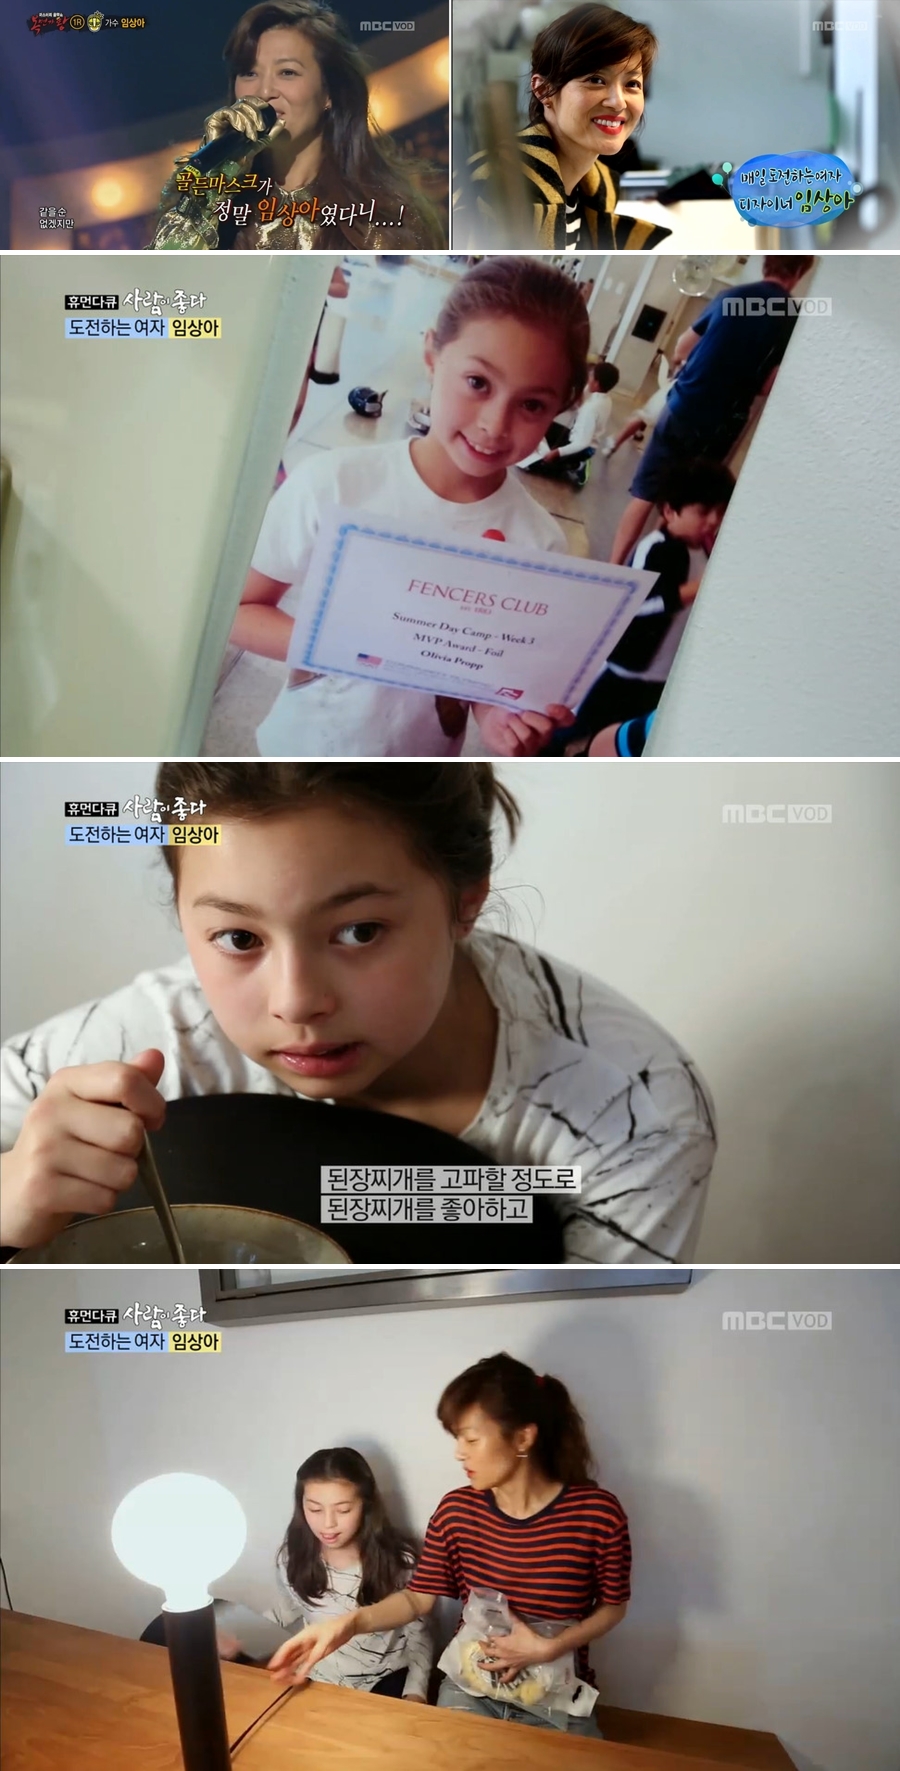 임상아 딸 미모 화제 / 사진: MBC '사람이 좋다', '복면가왕' 방송 캡처